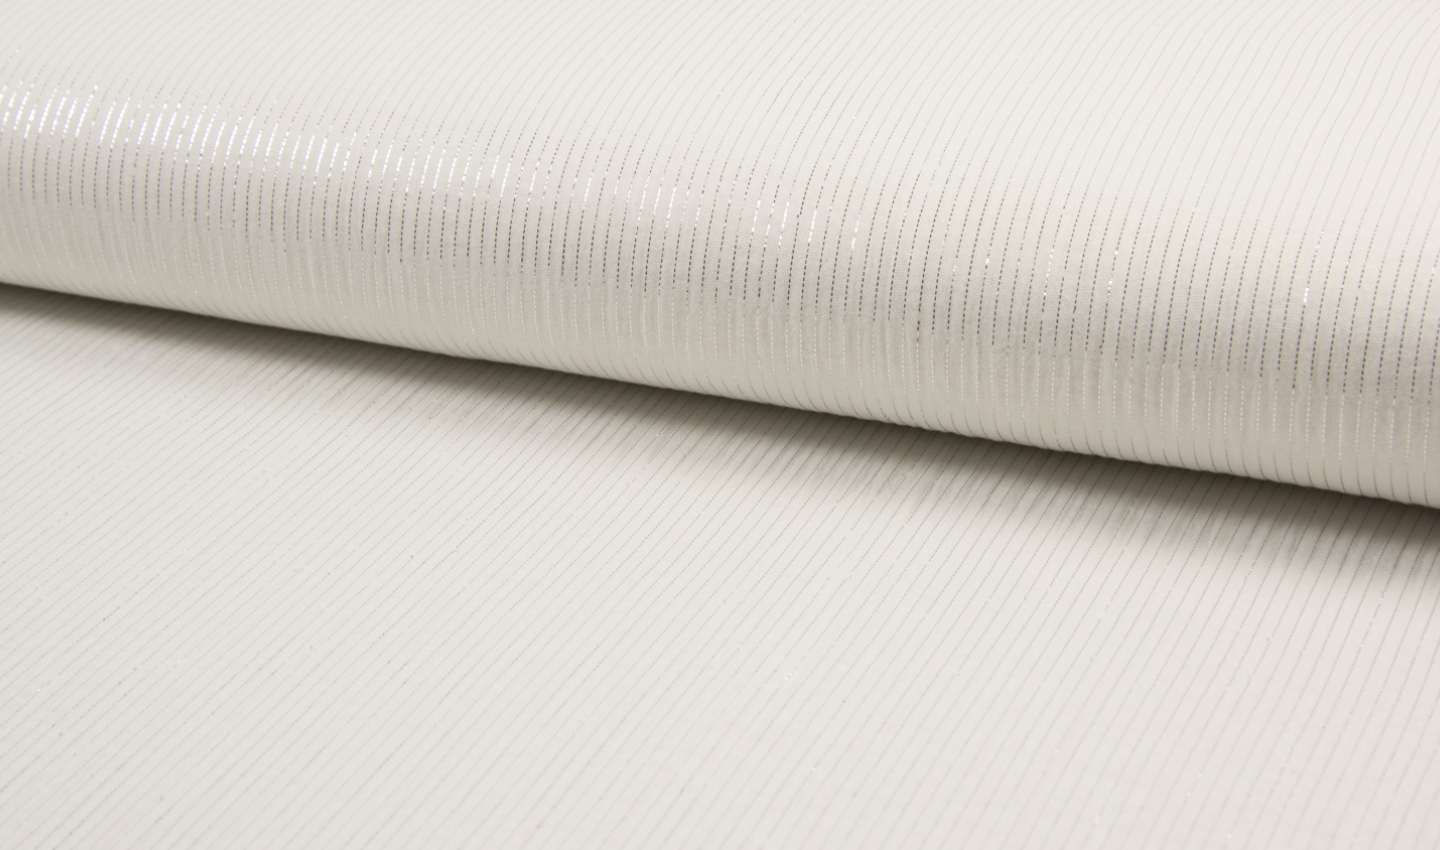 05m Musselin Baumwolle Double Gauze Lurex Streifen weiß silber